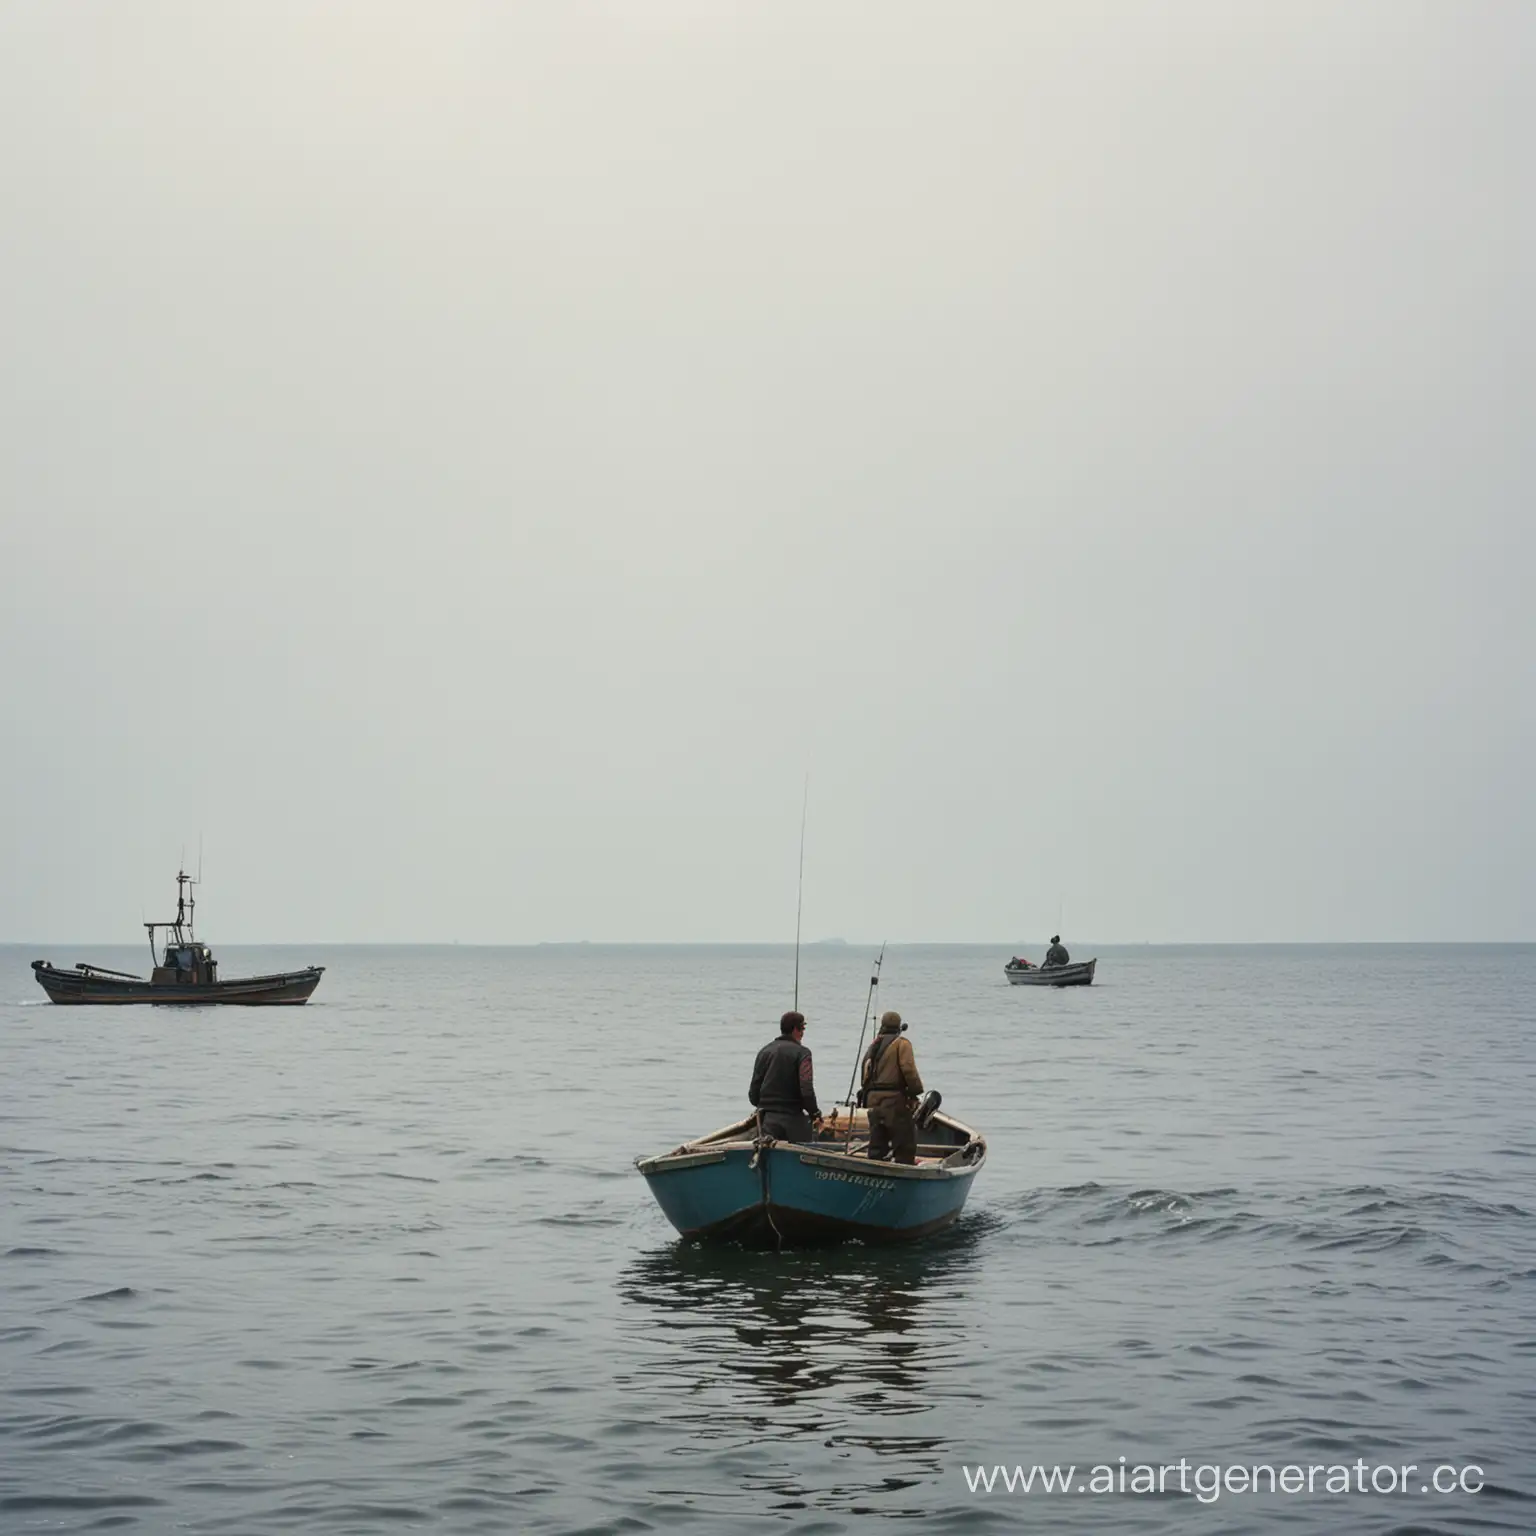 два рыбака в лодке, вид со спины на отдалении, 70-е годы